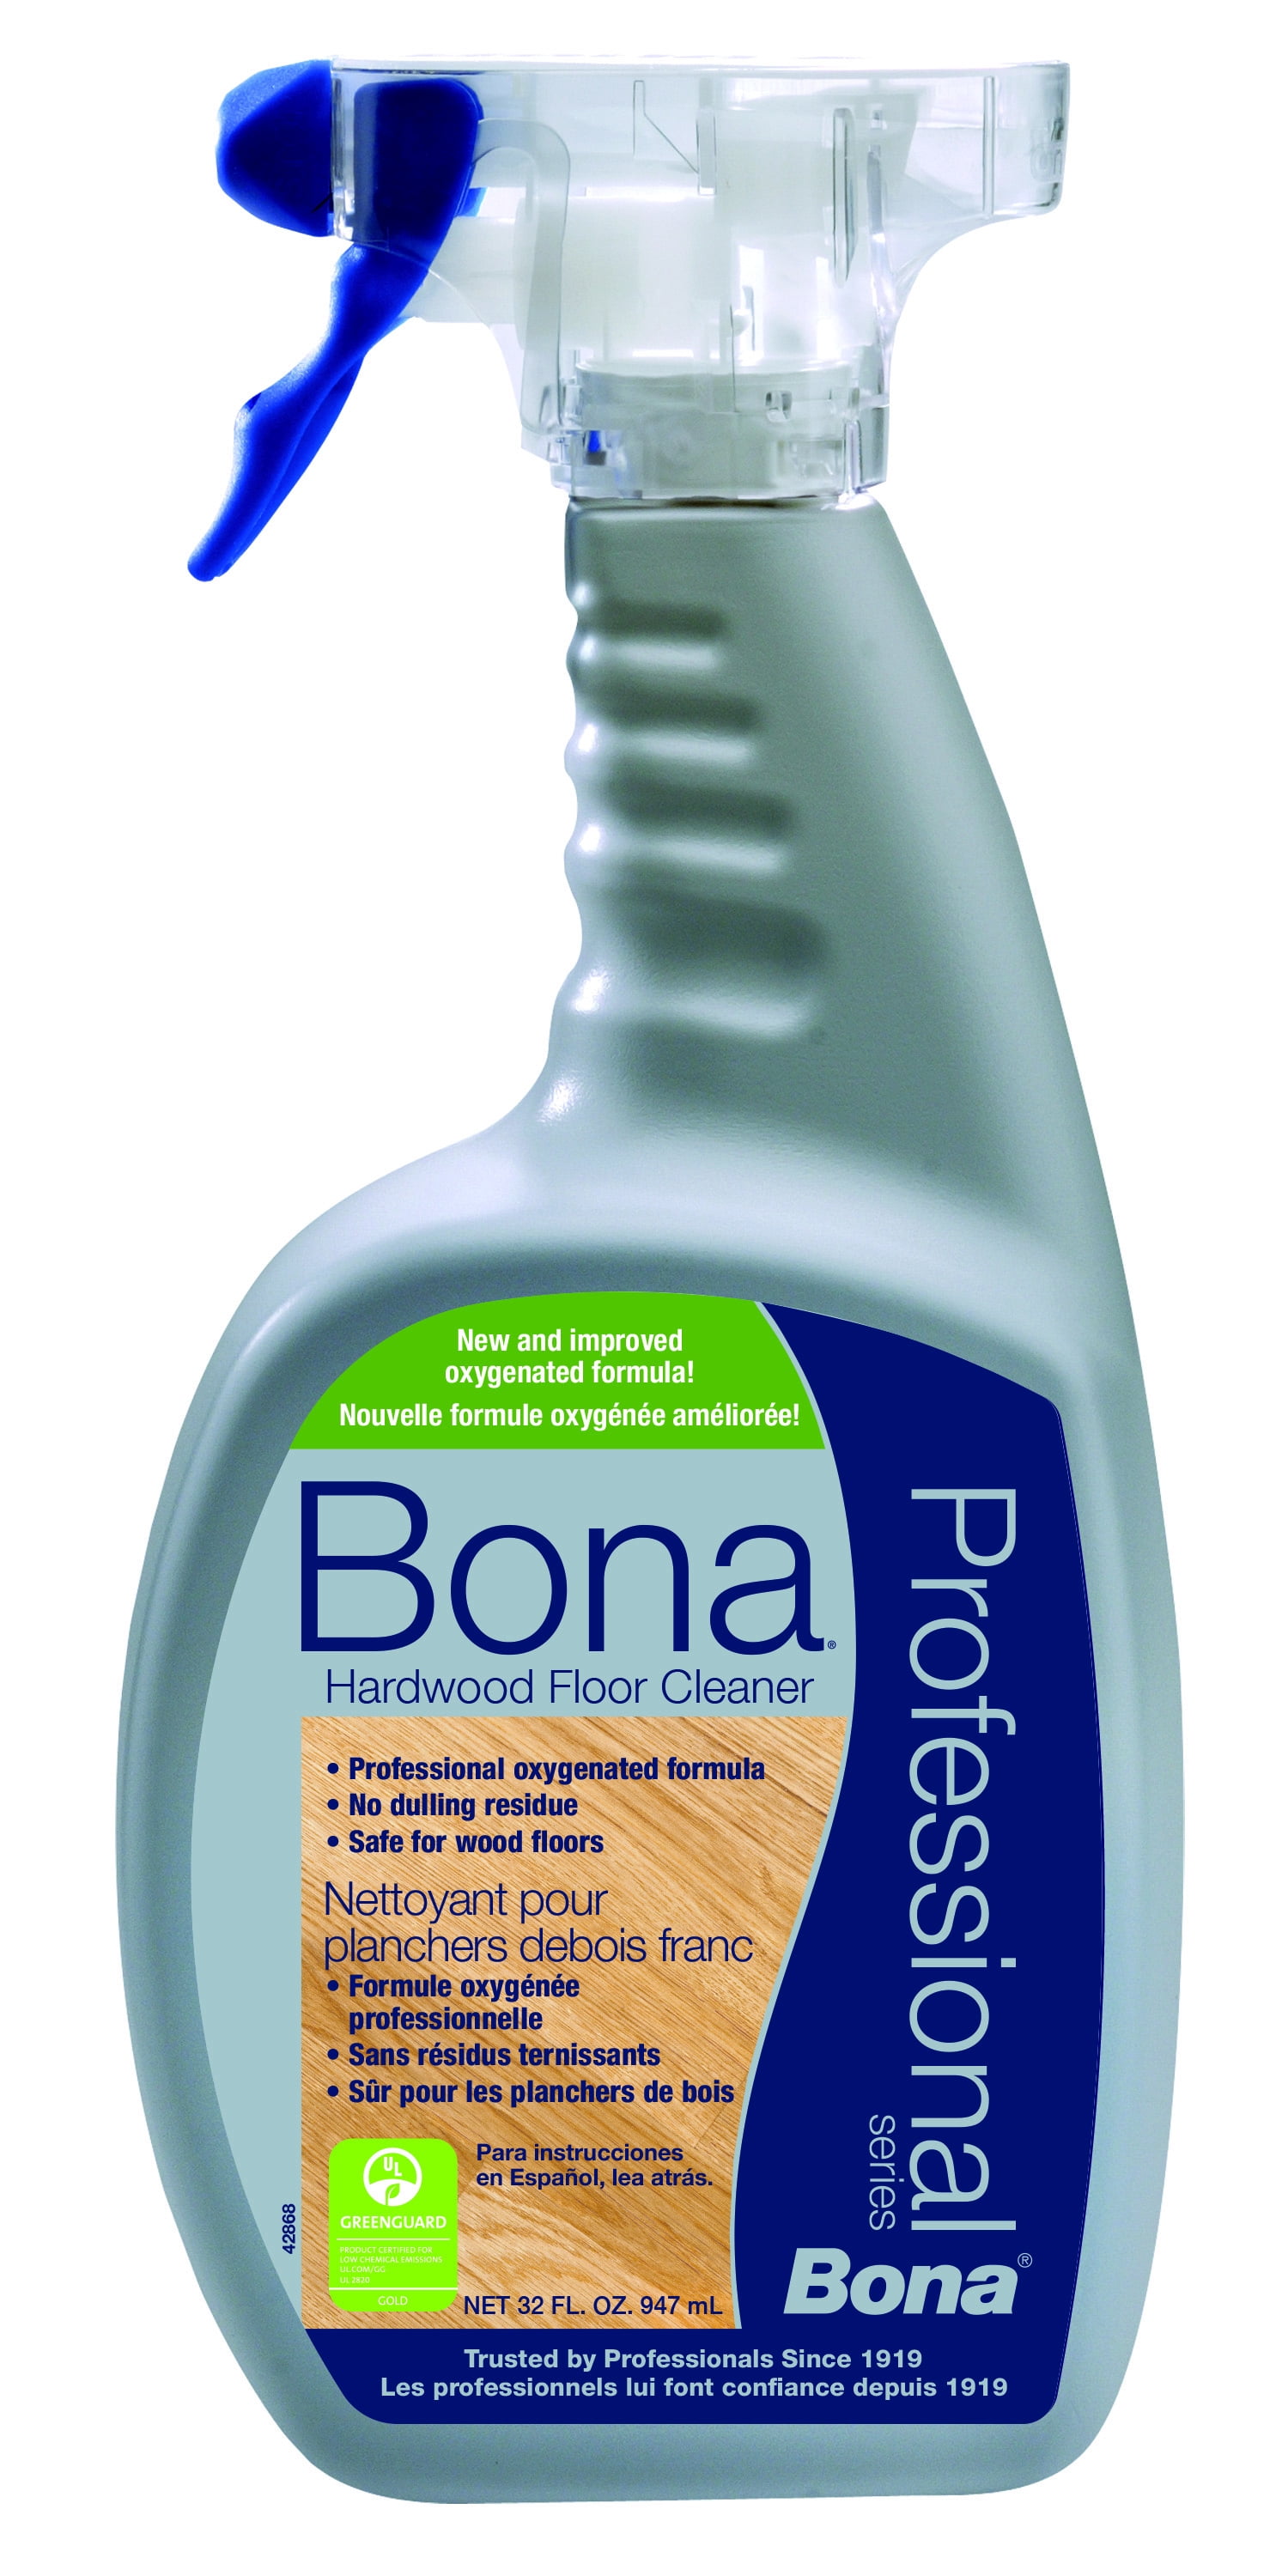 Bona Pro Series Hardwood Floor Cleaner, Bona Hardwood Floor Refresher Reviews